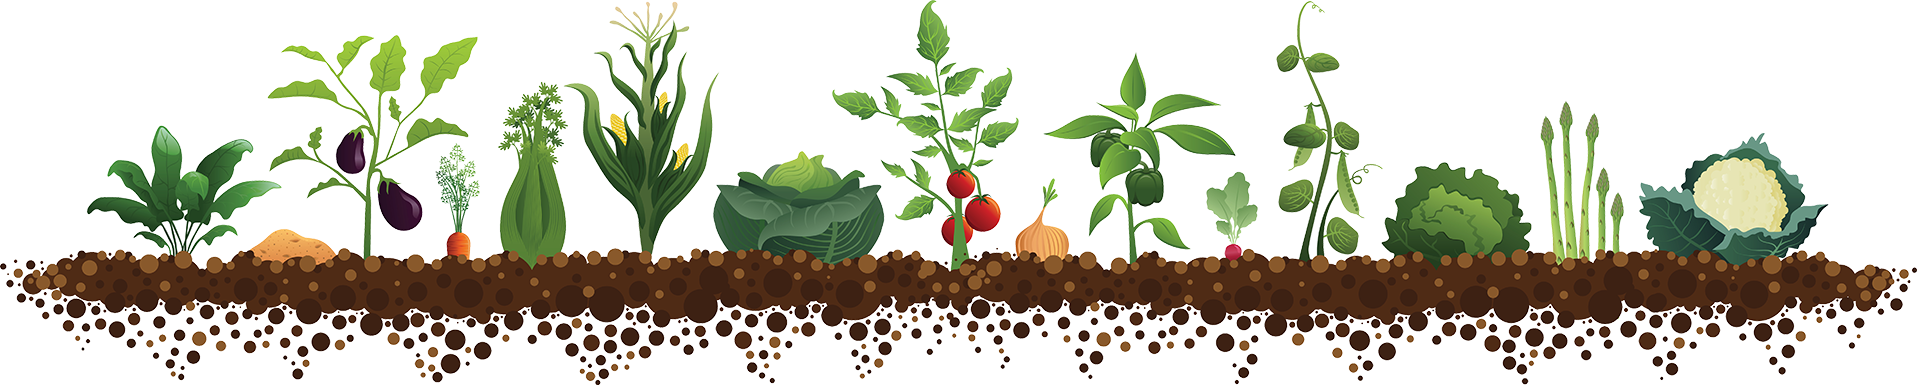 Высаживание томатов 2019 когда высаживать